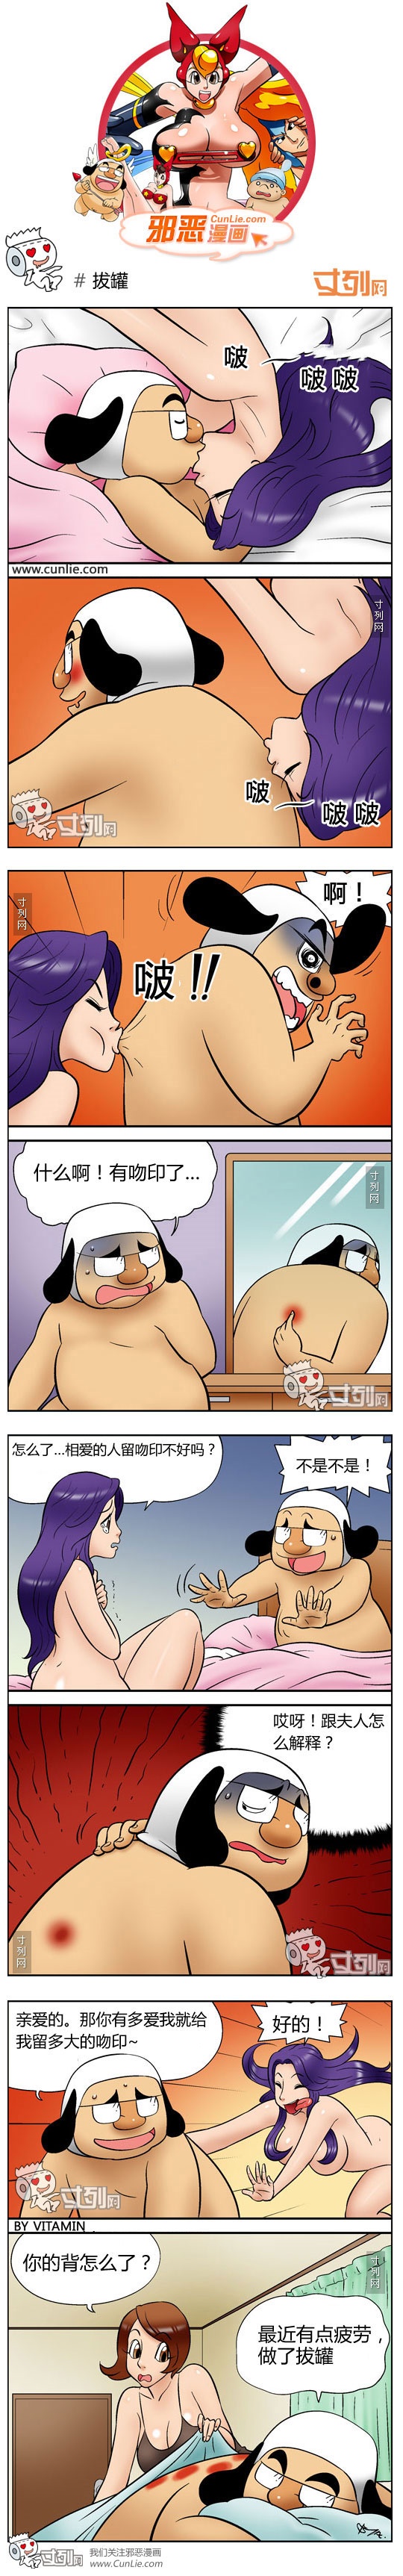 韩国搞笑内涵漫画之拔火罐